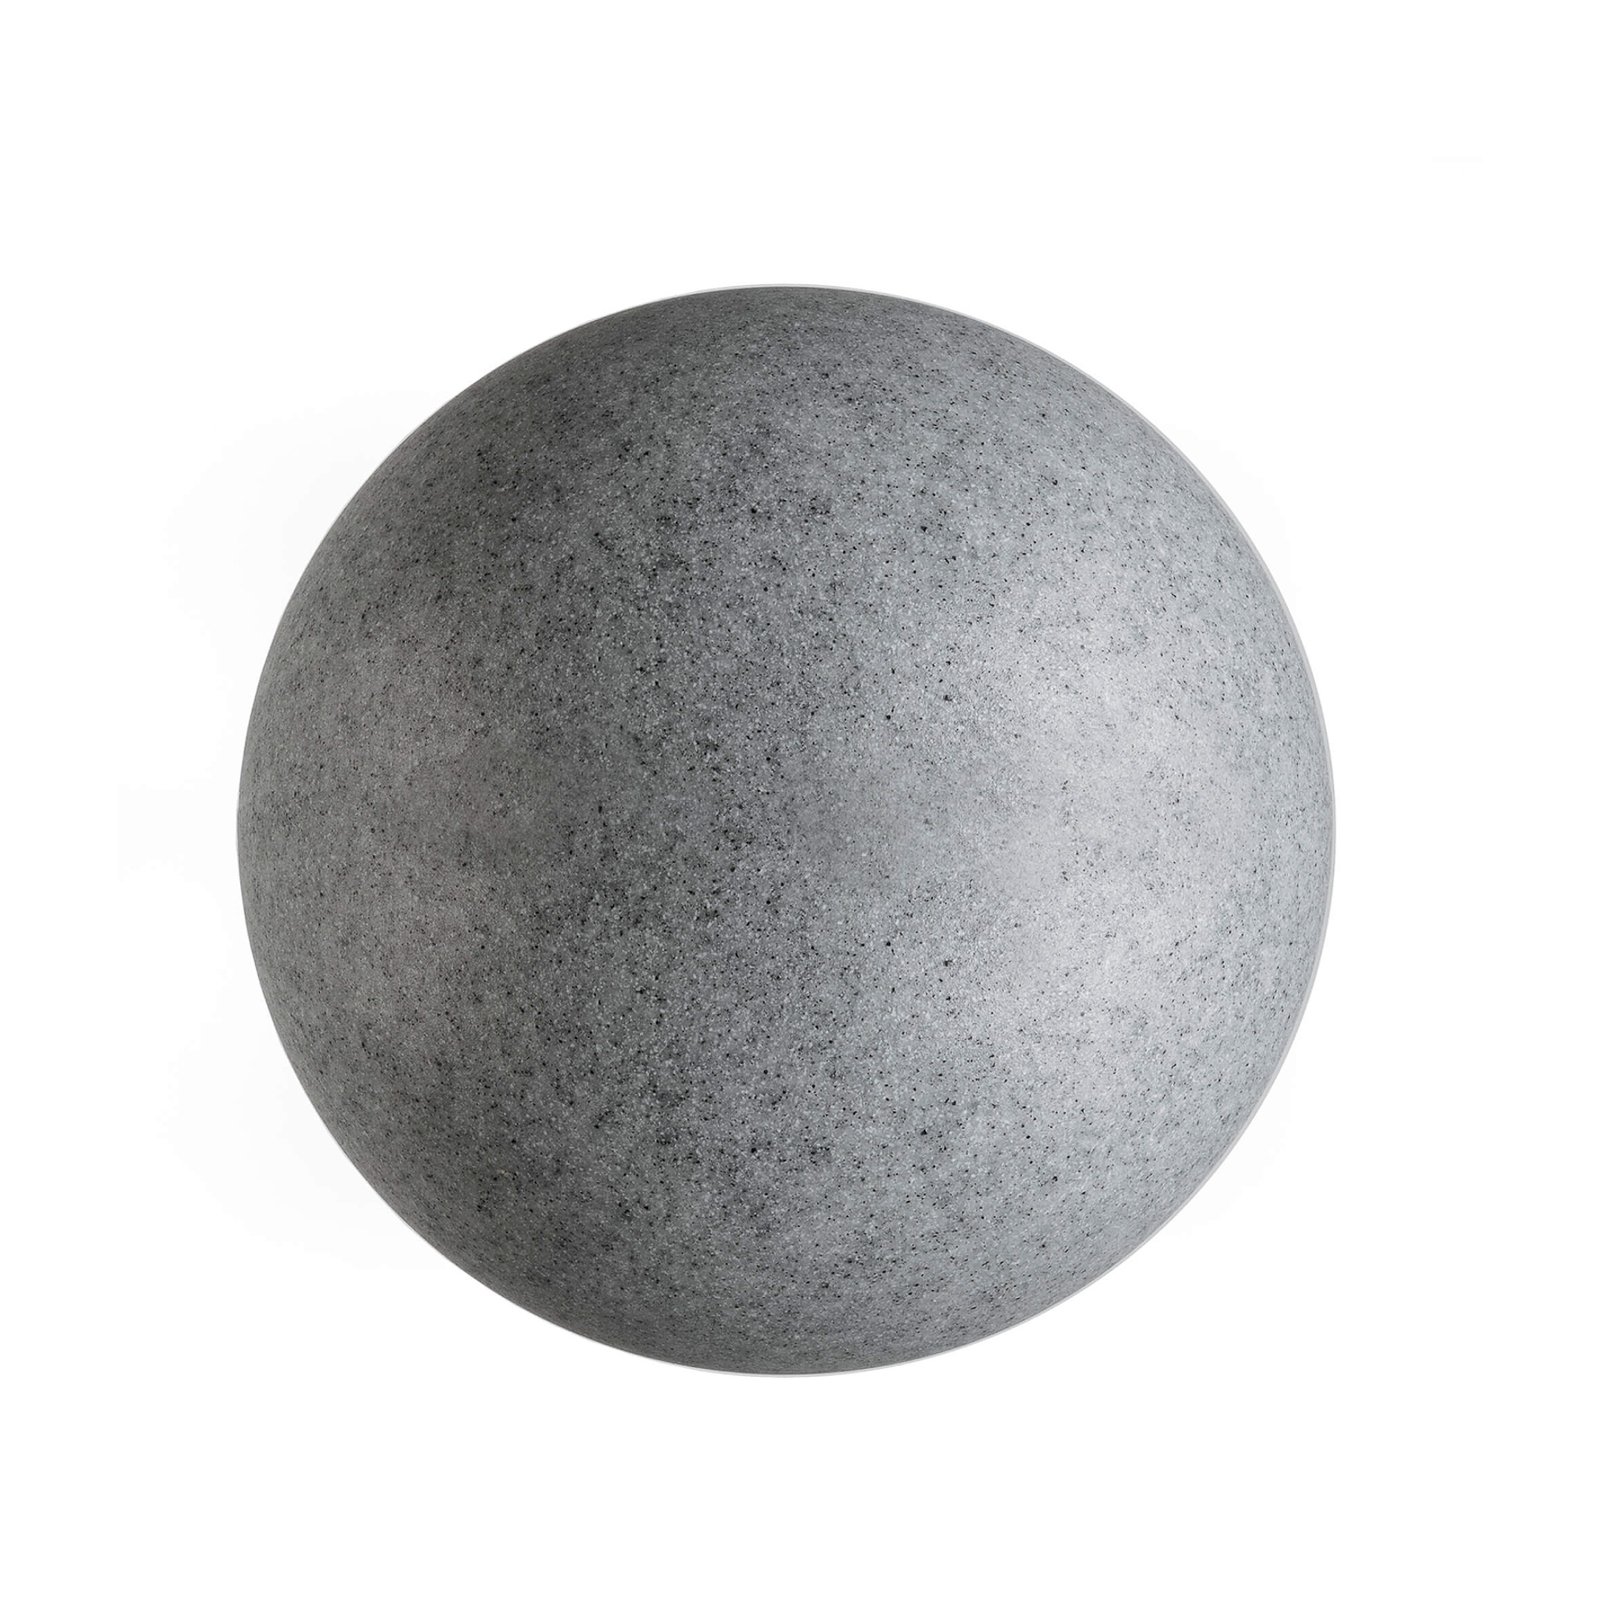 Lichtbol met grondspies, terracotta Ø 45cm